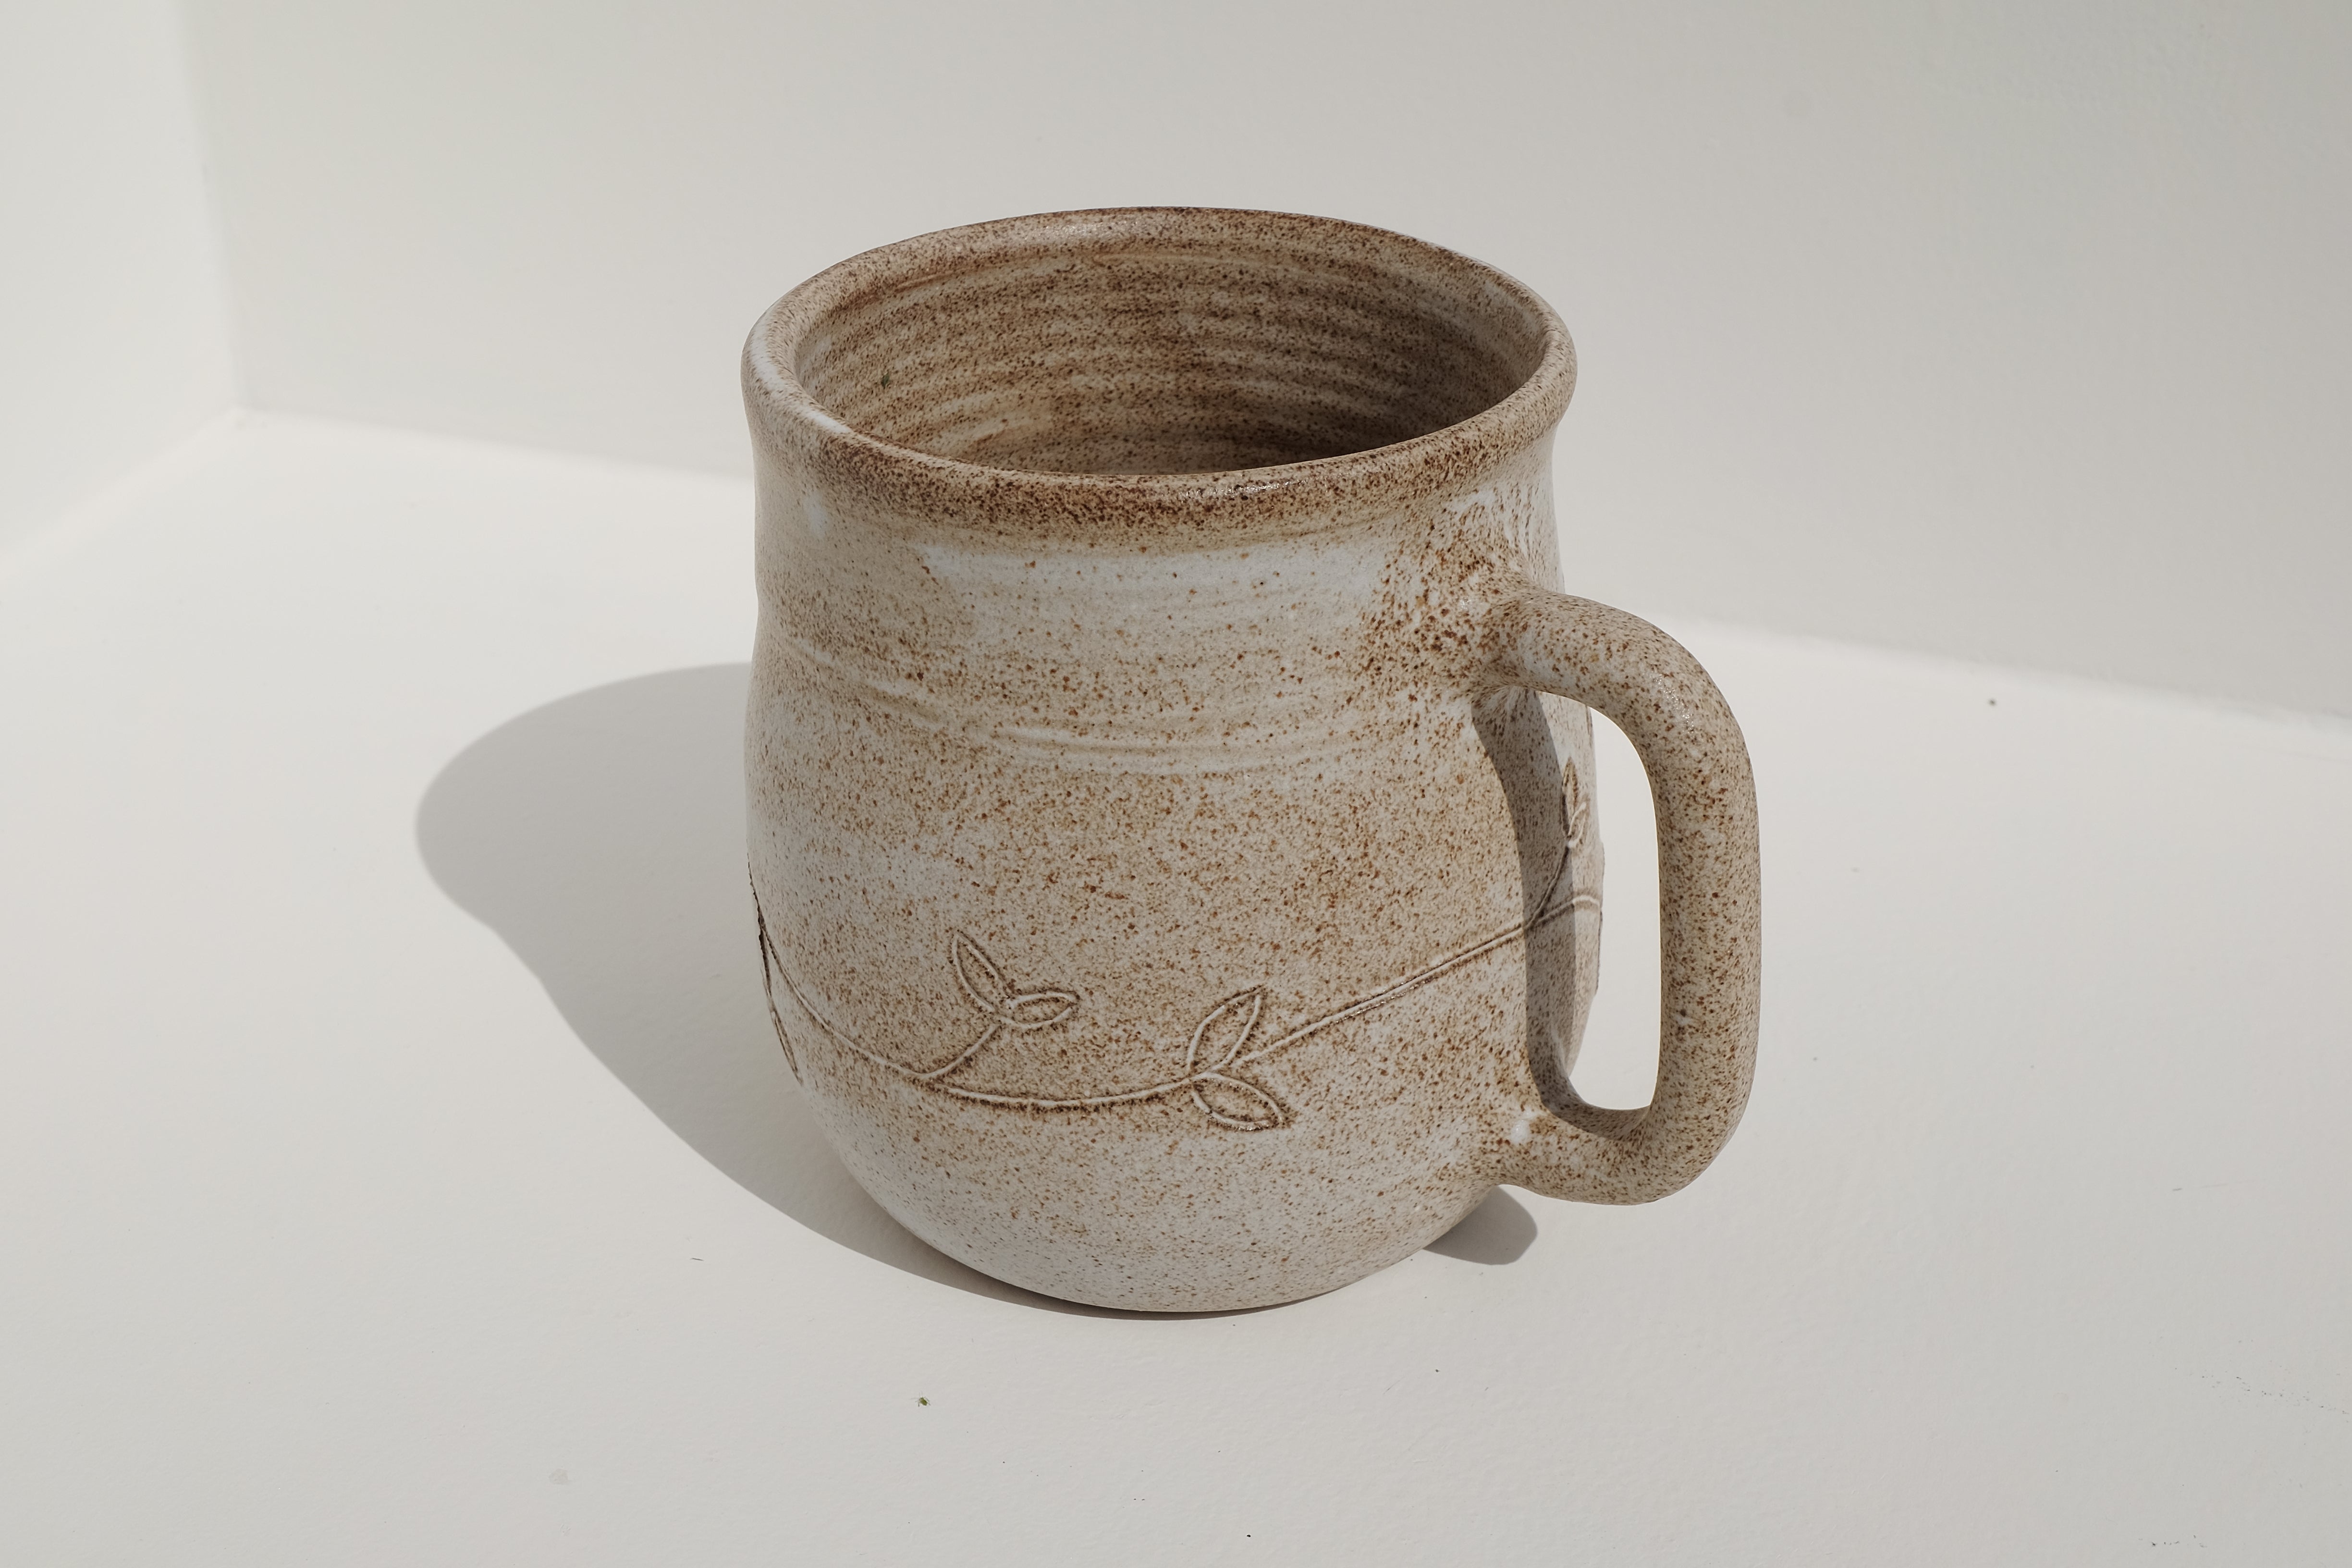 big tea / bear mug with floral details